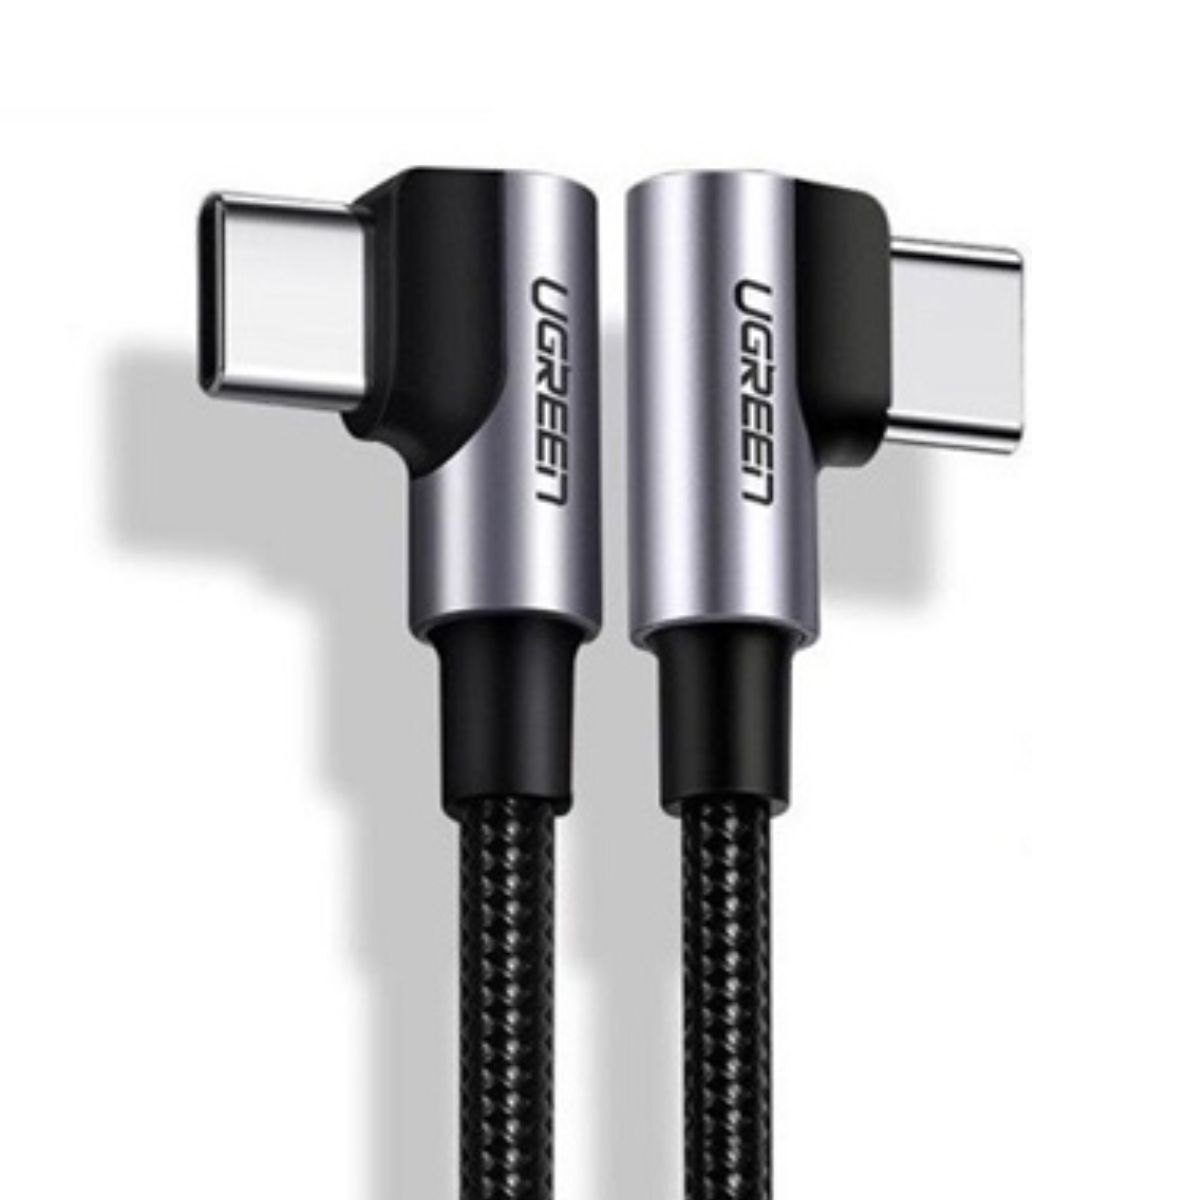 Cáp sạc nhanh dài 3m USB type C 2 đầu bẻ 90 độ Ugreen 10357 US335 màu đen, hỗ trợ sạc nhanh 5A